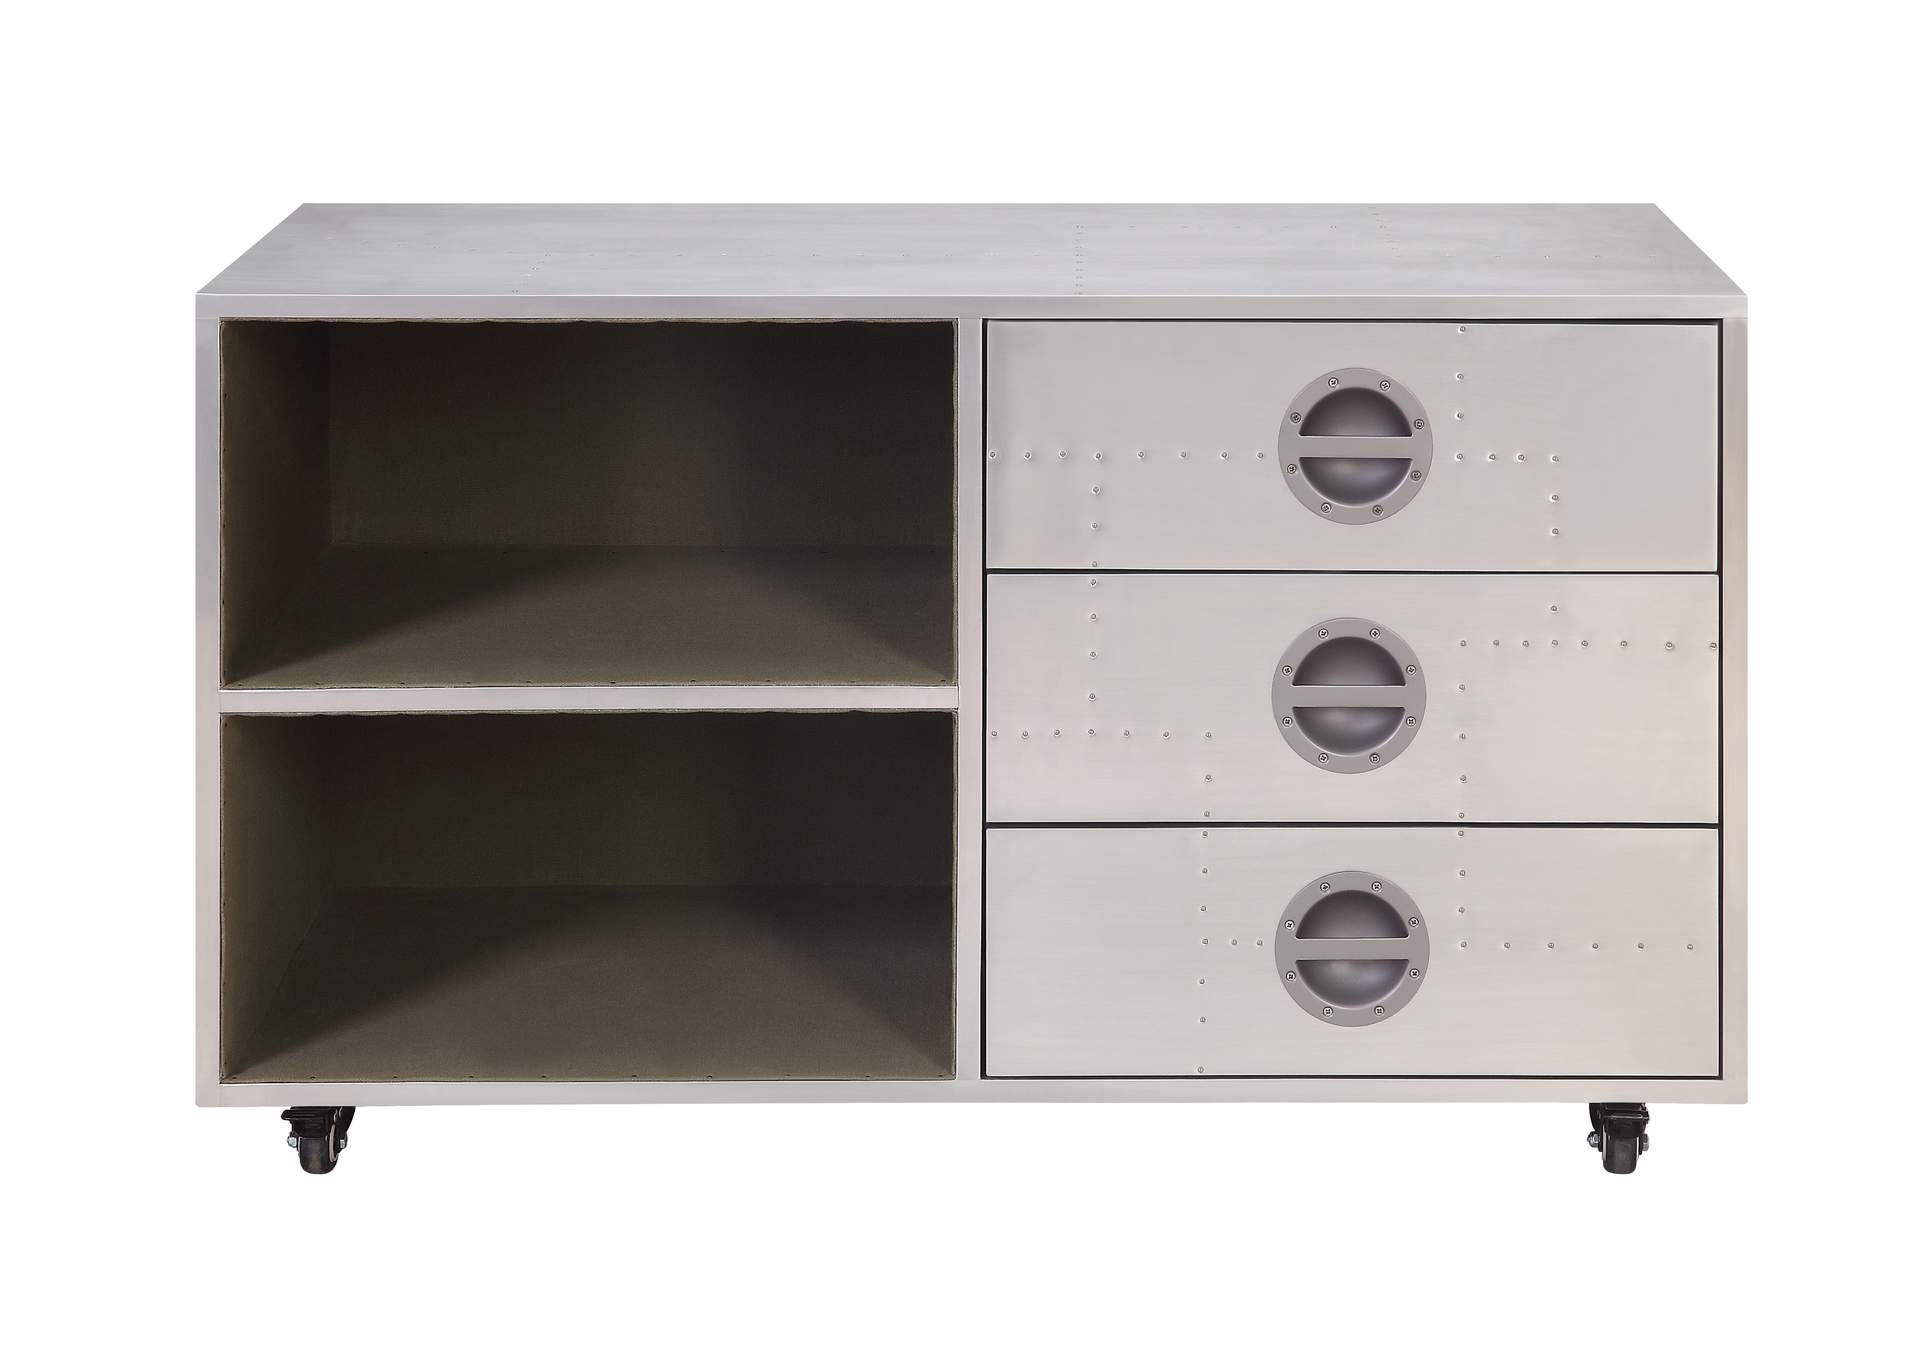 Brancaster Aluminum Cabinet,Acme